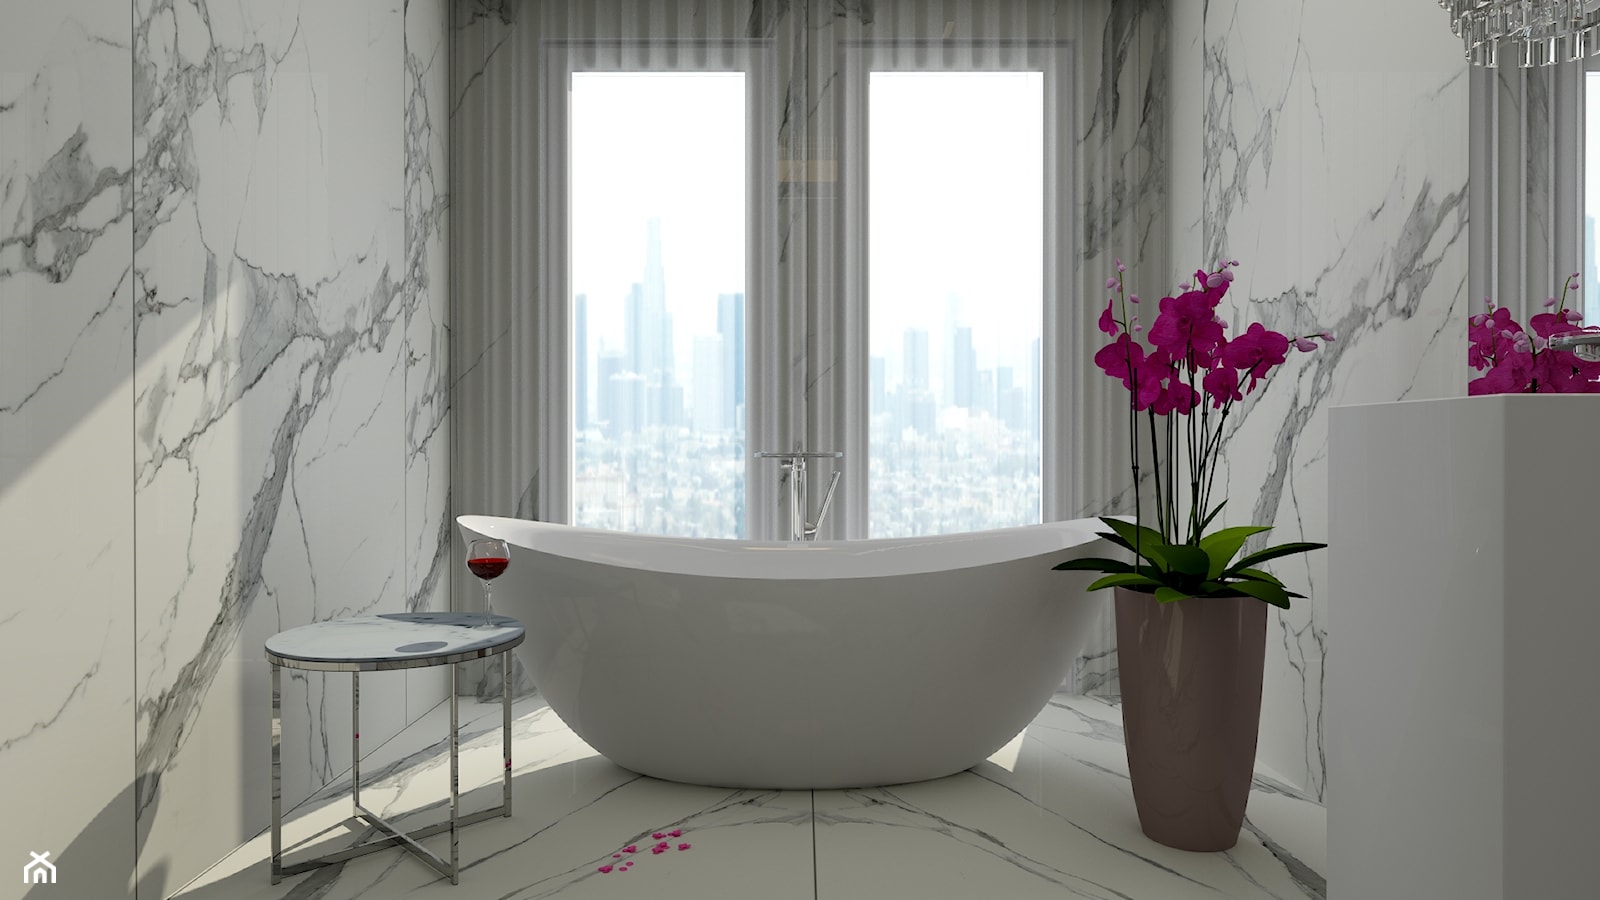 Pokój Kąpielowy - Mała z marmurową podłogą łazienka z oknem, styl nowoczesny - zdjęcie od DESIGNYOURHOME - Homebook